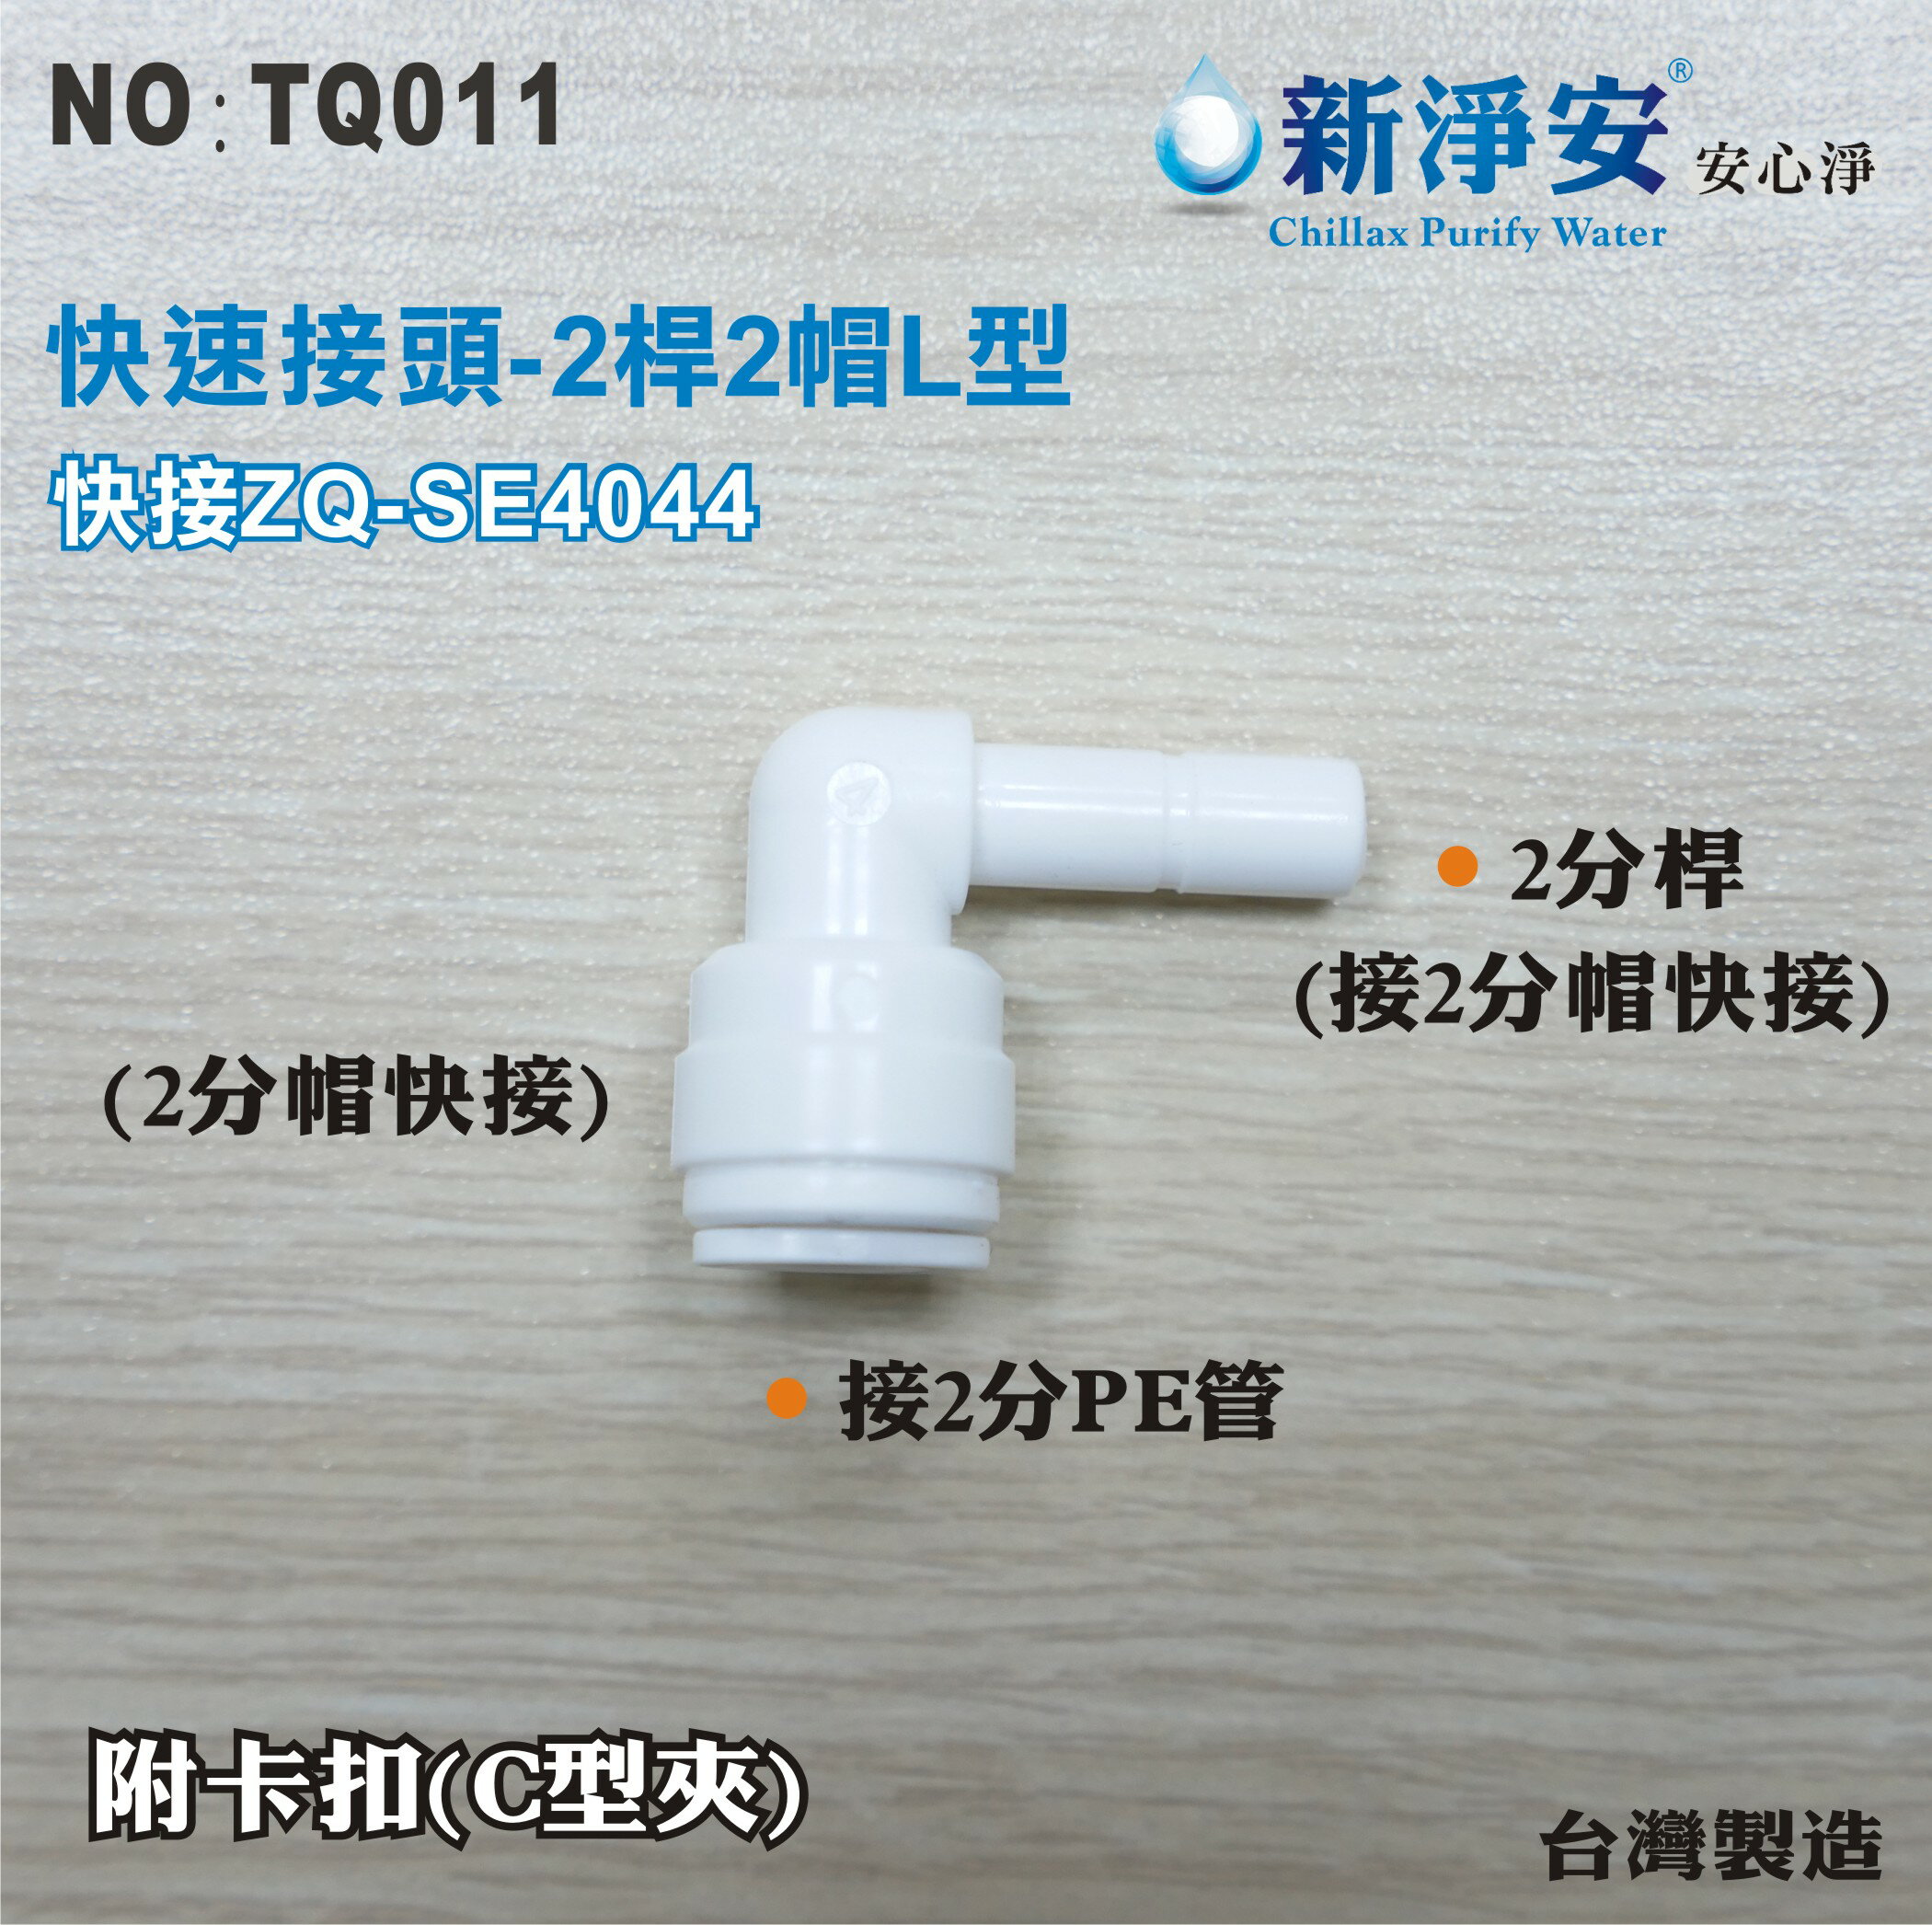 【龍門淨水】快速接頭 ZQ-SE4044 2分桿接2分管L型接頭 2桿2帽L塑膠接頭 台灣製造 直購價20元(TQ011)